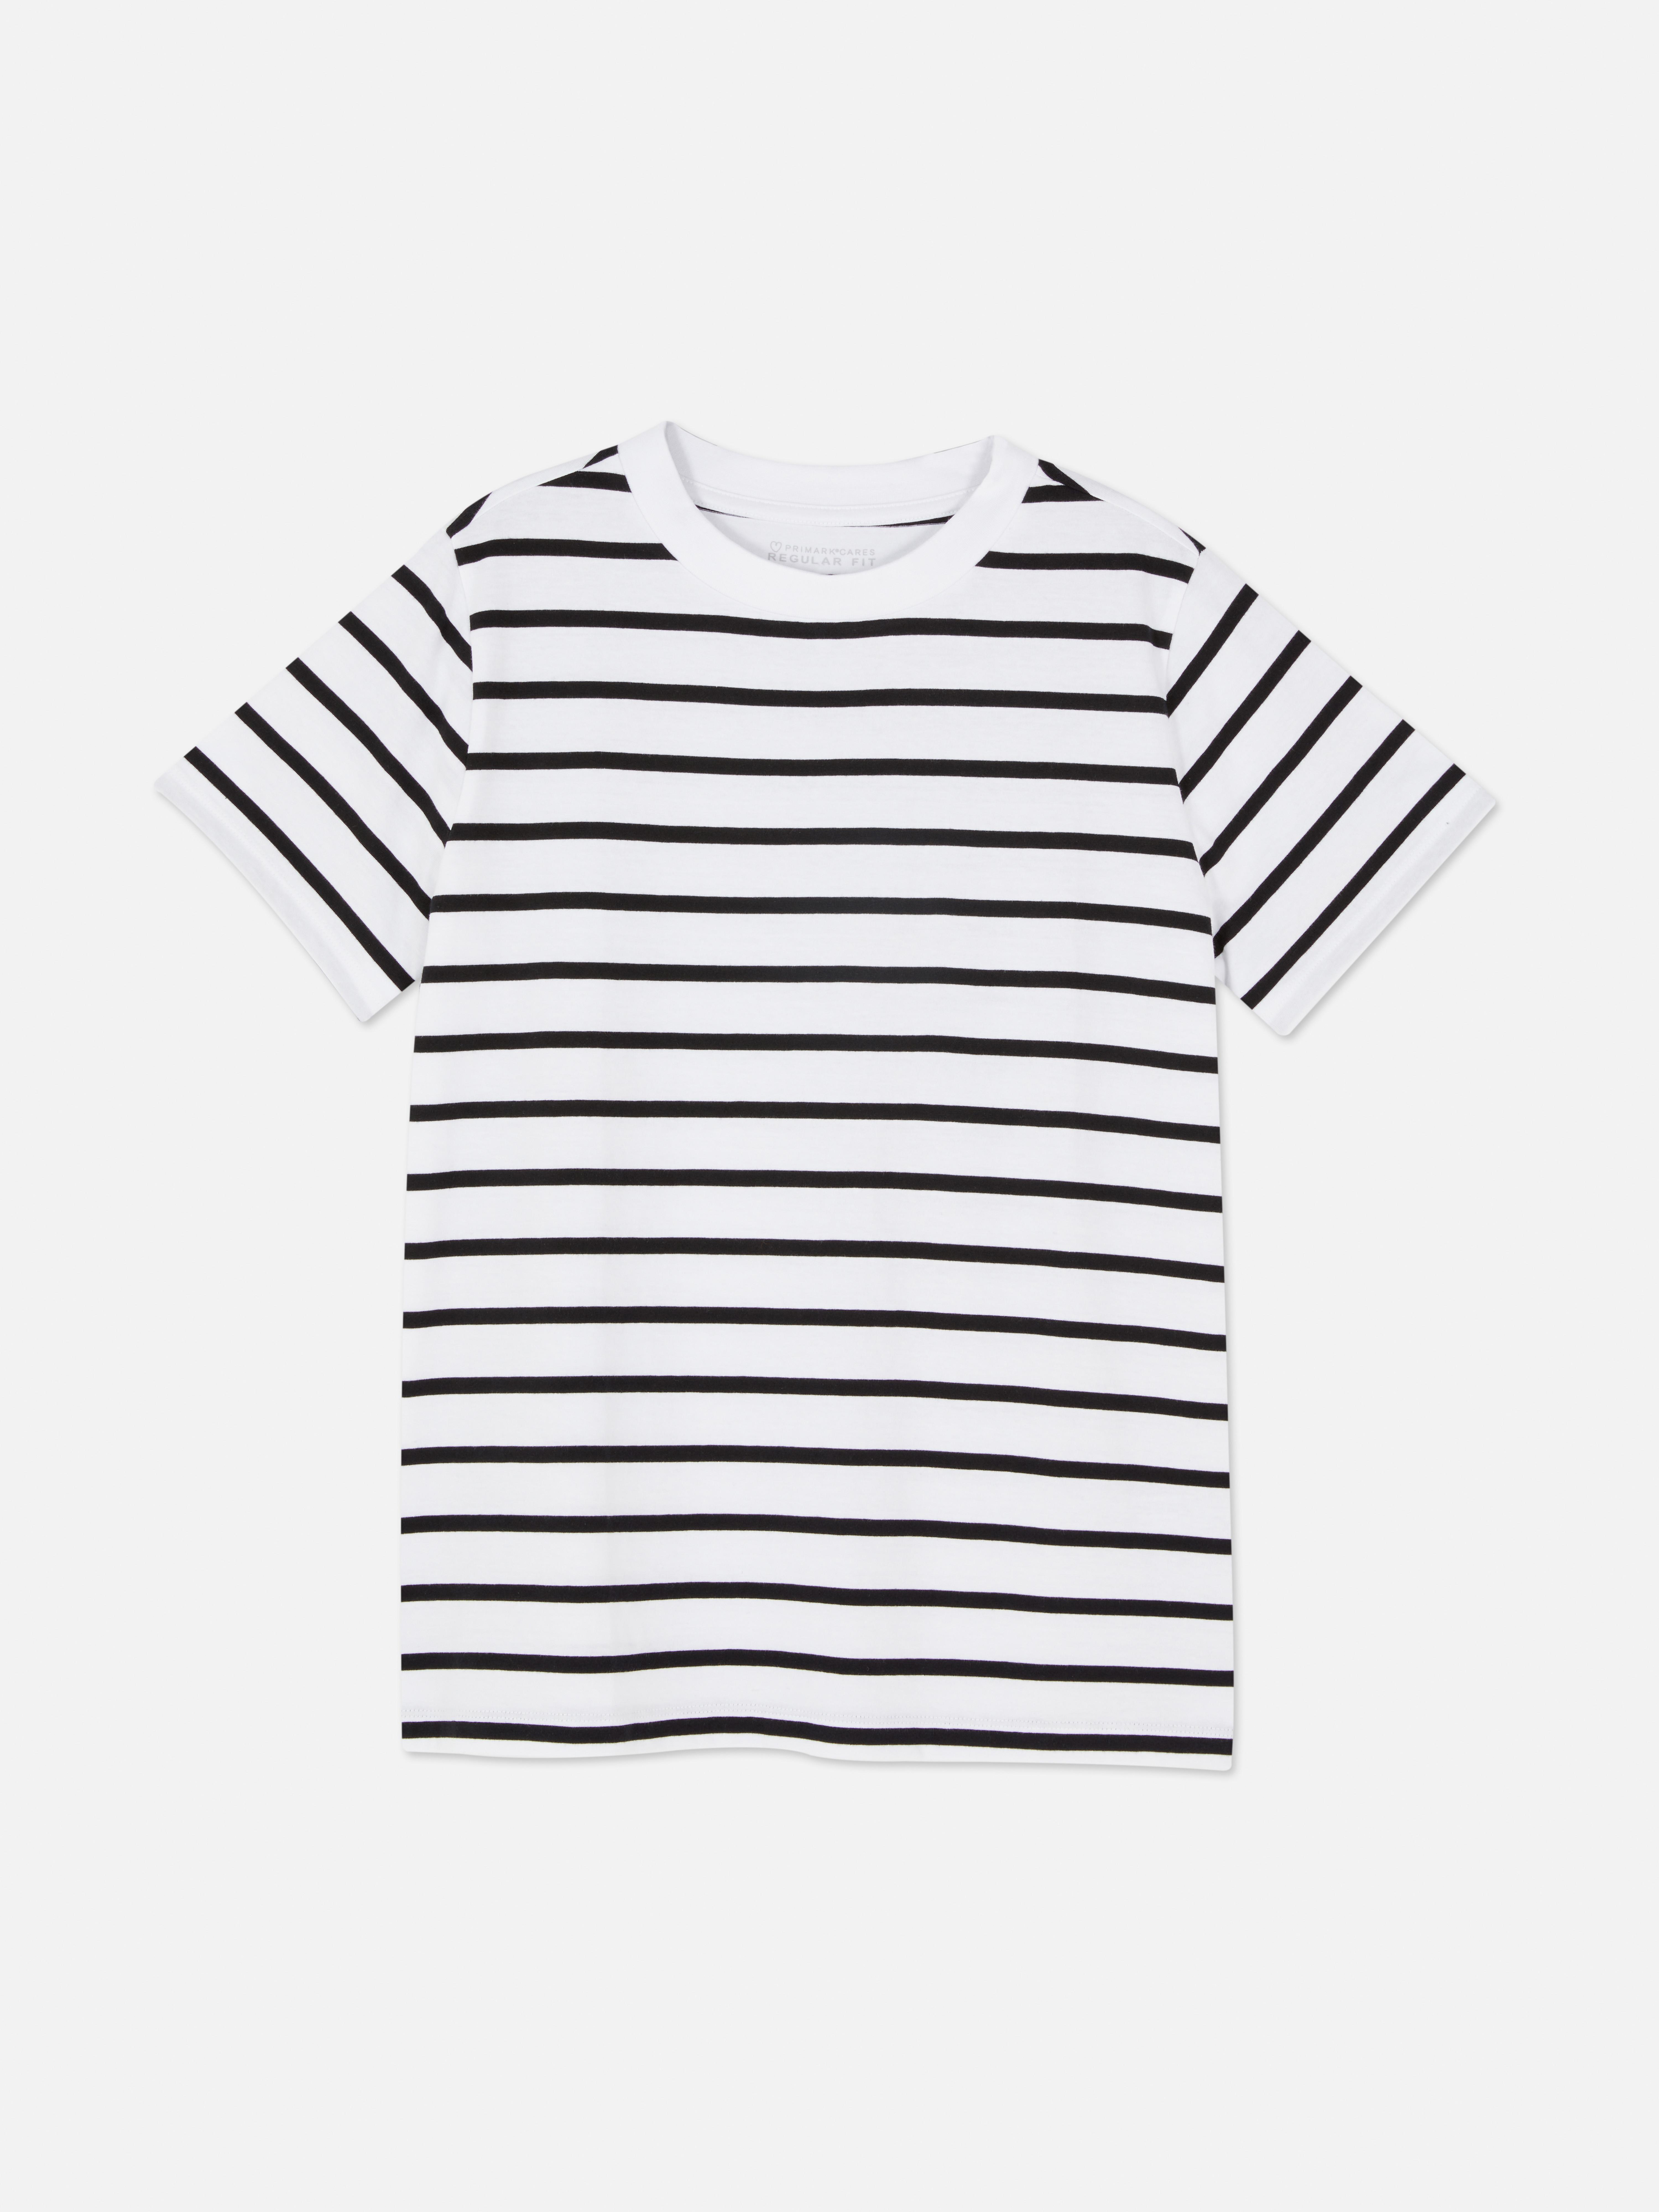 Camiseta con rayas negras y blancas para niños : : Juguetes y  juegos